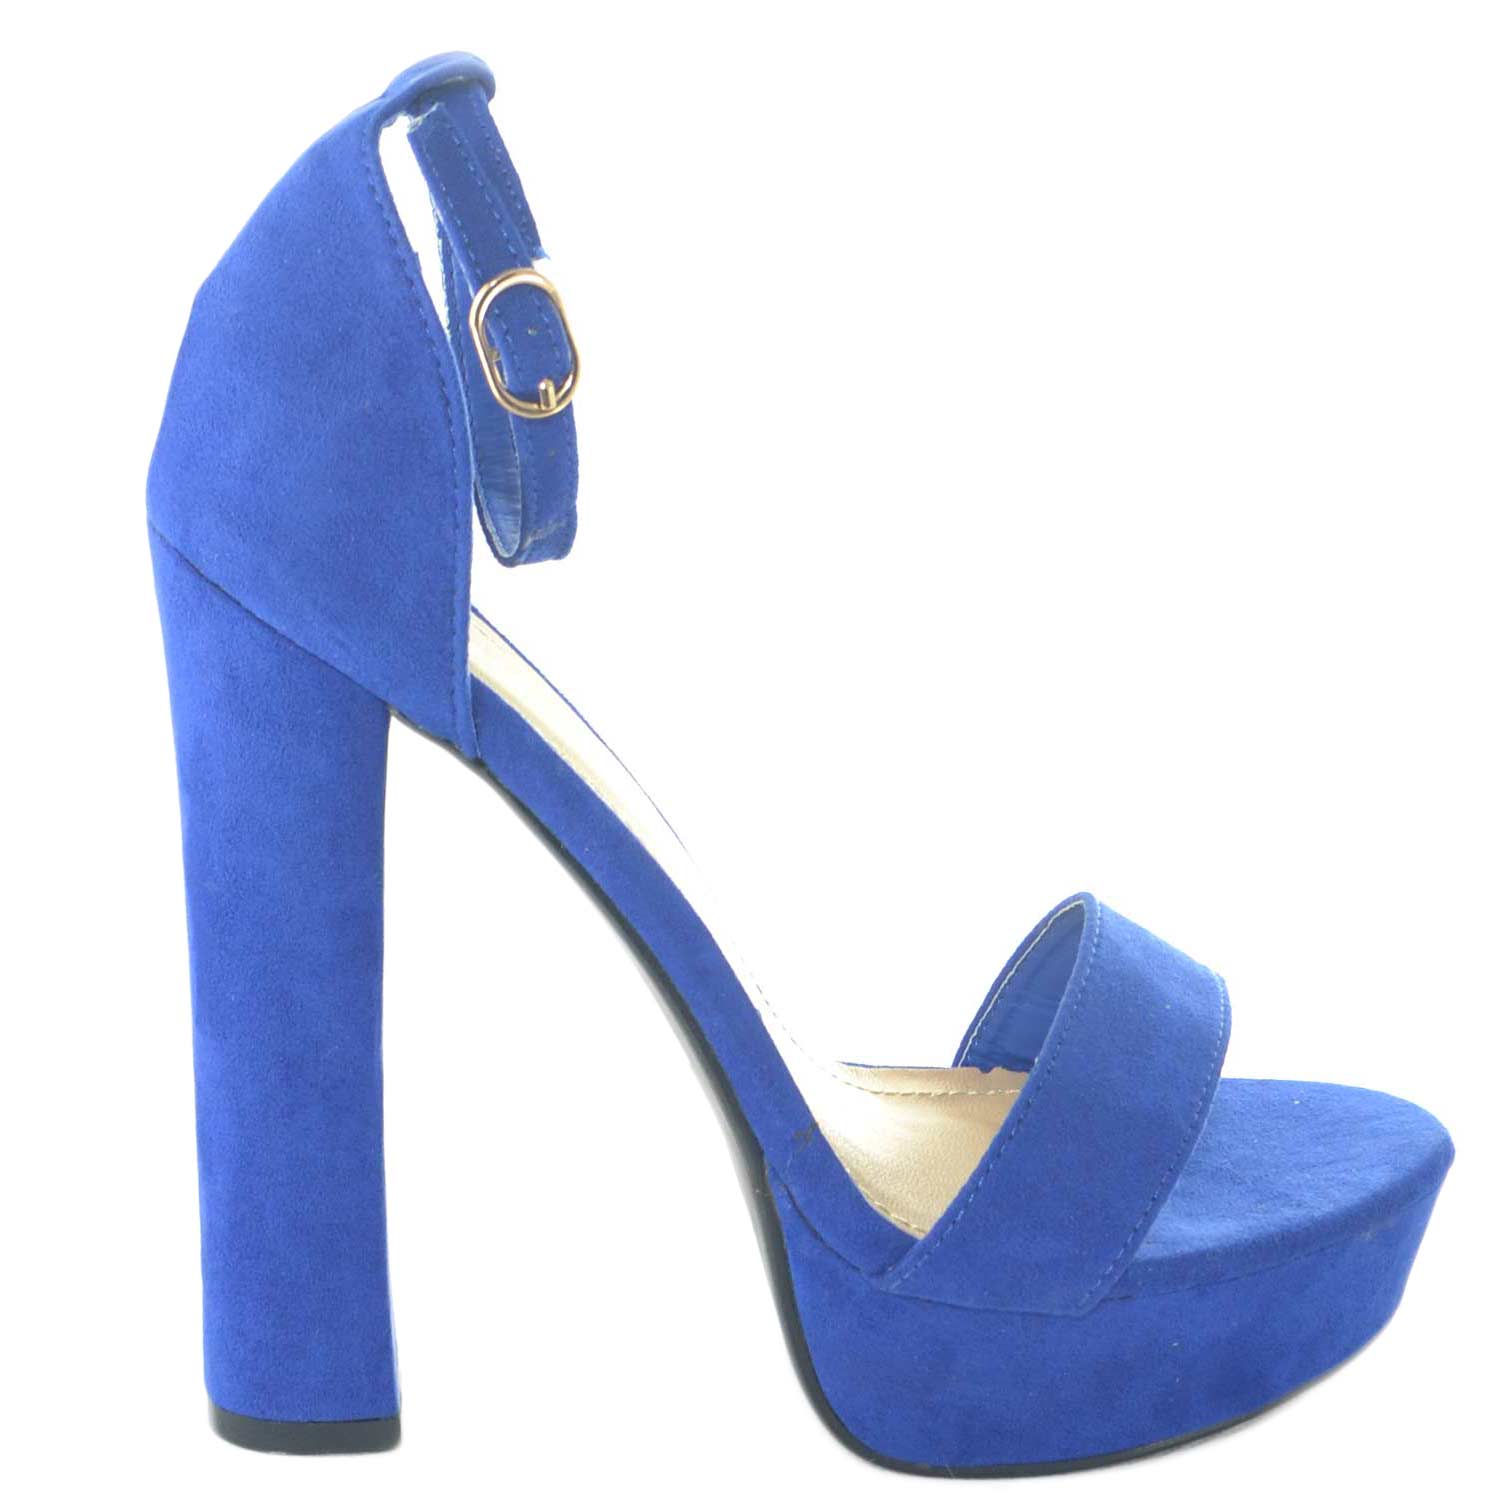 Sandalo con tacco 12 e plateau allacciato alla caviglia color blu elettrico  estate 2018 glamour donna sandali tacco Malu Shoes | MaluShoes